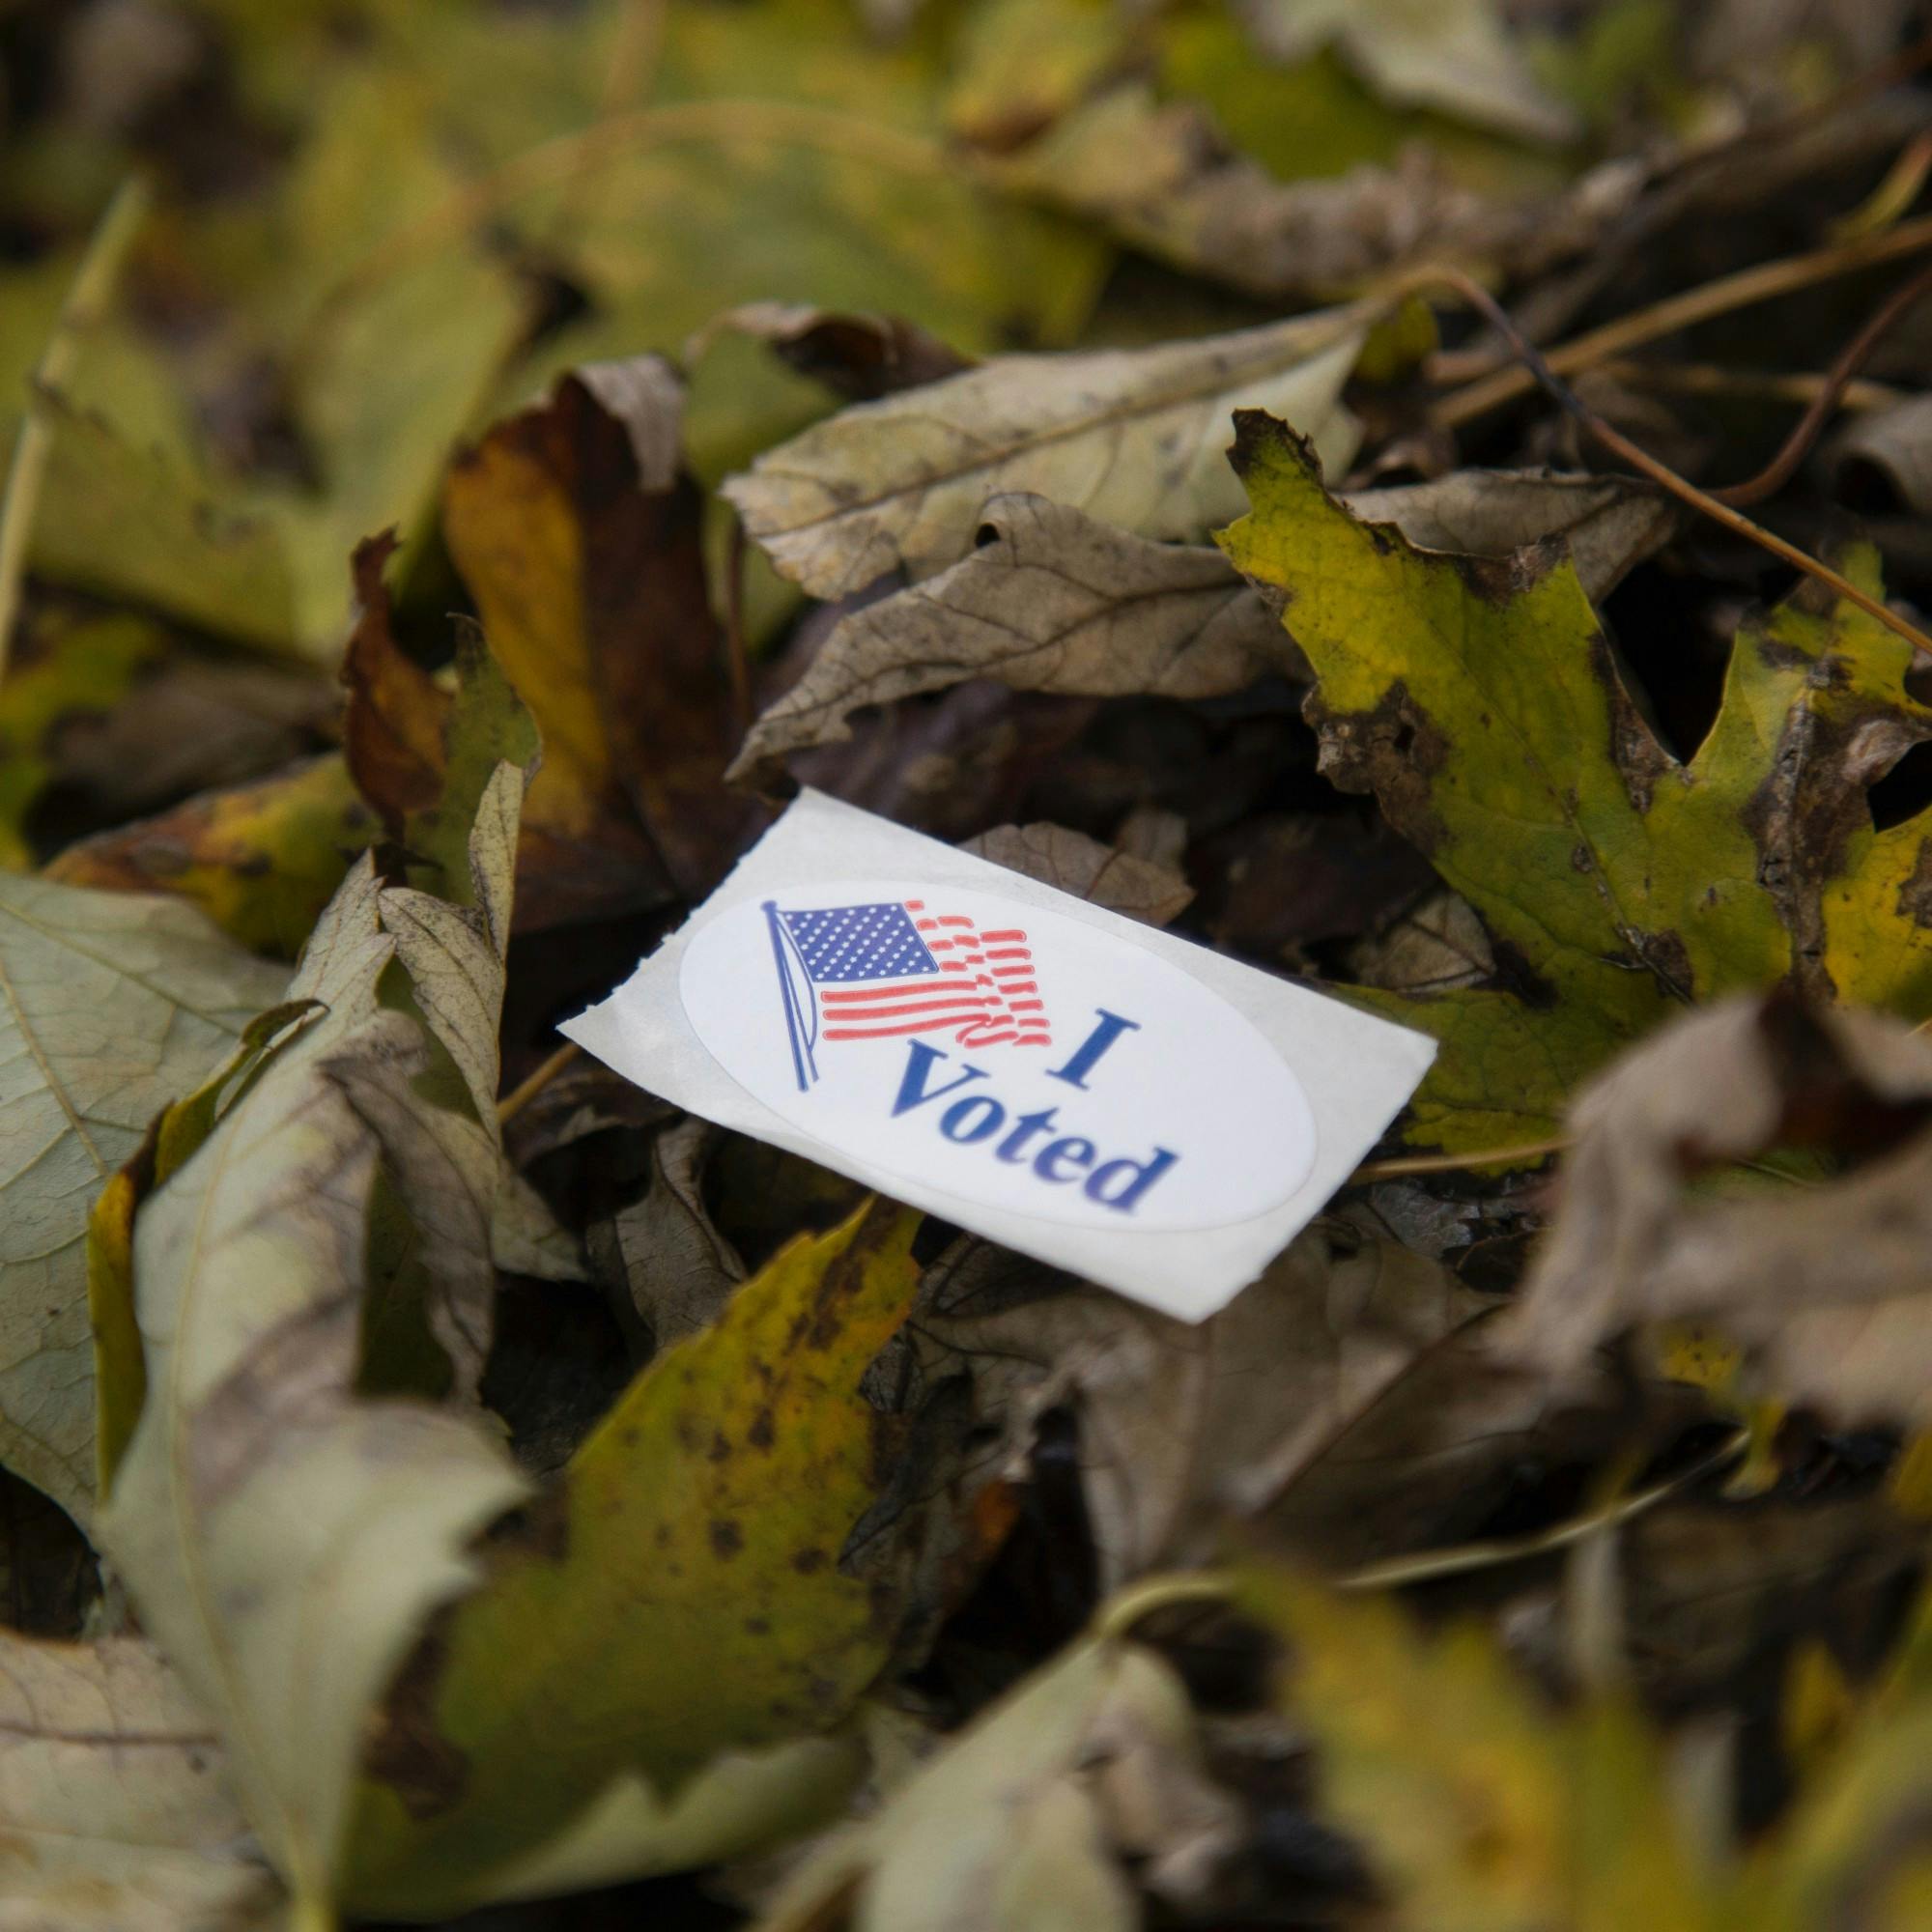 Voting Sticker